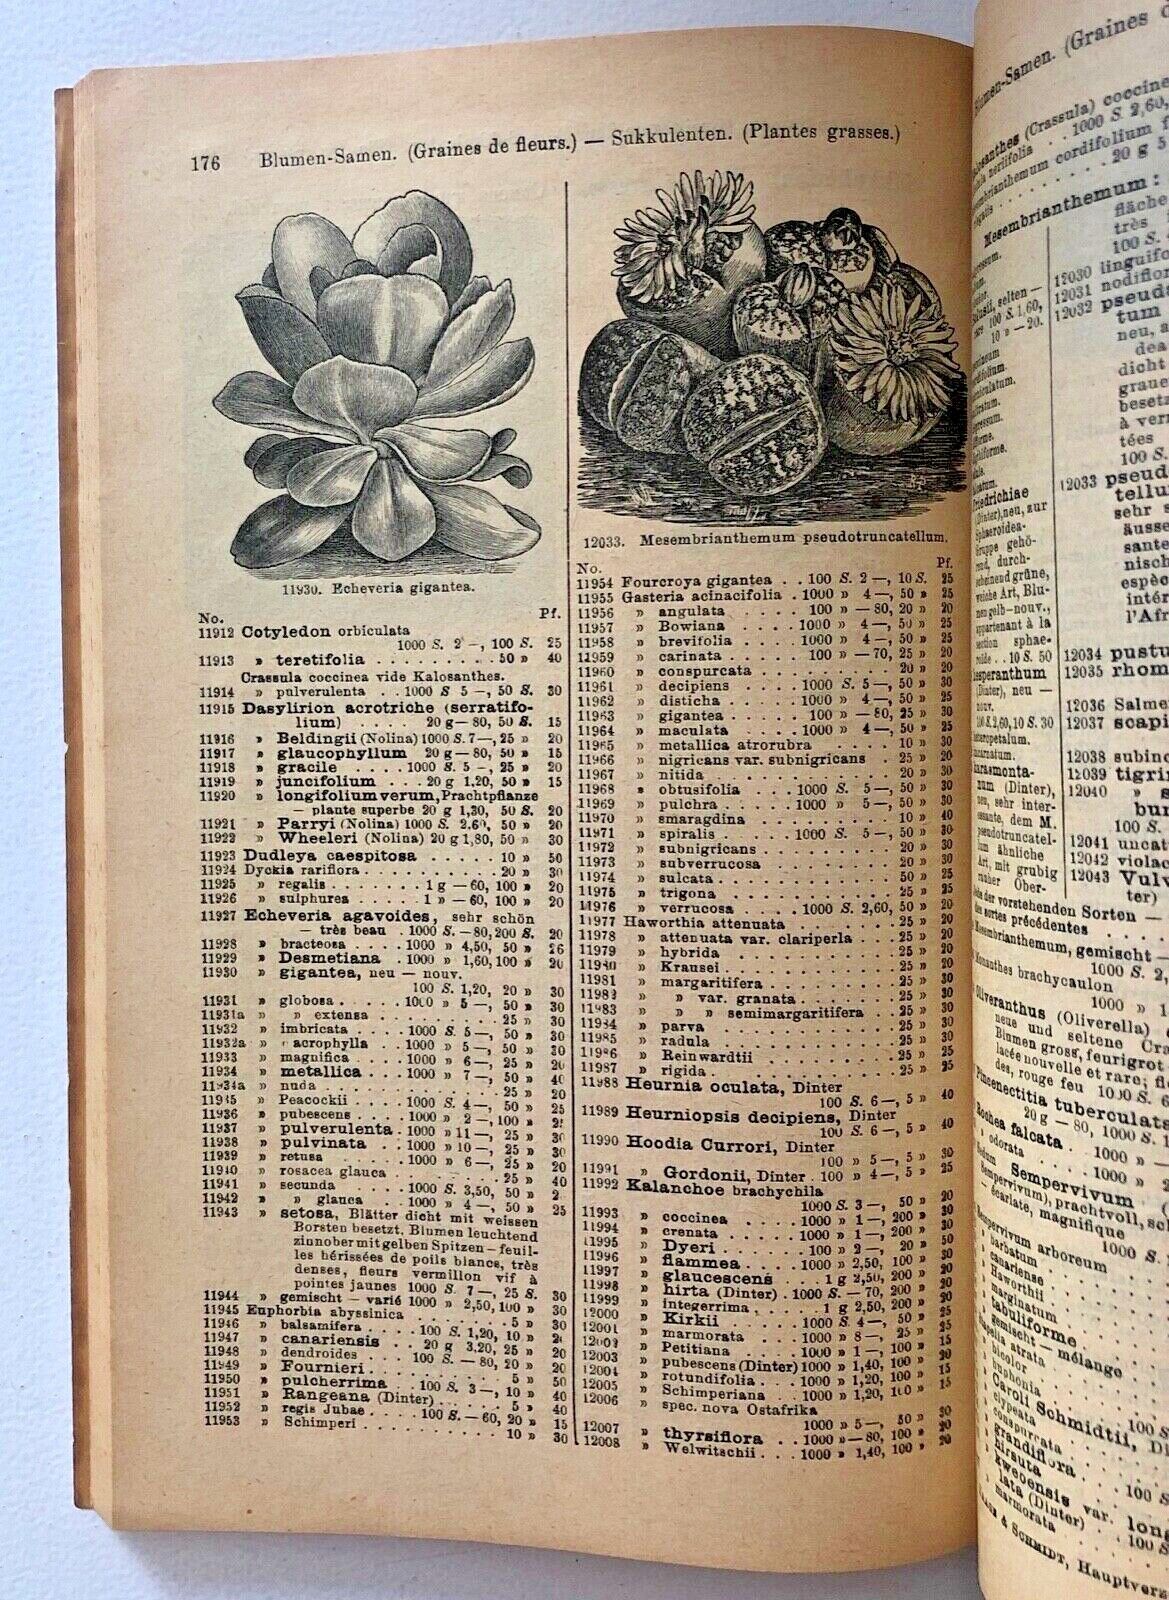 Haage & Schmidt 1914 Catalogue De Graines Et Plantes